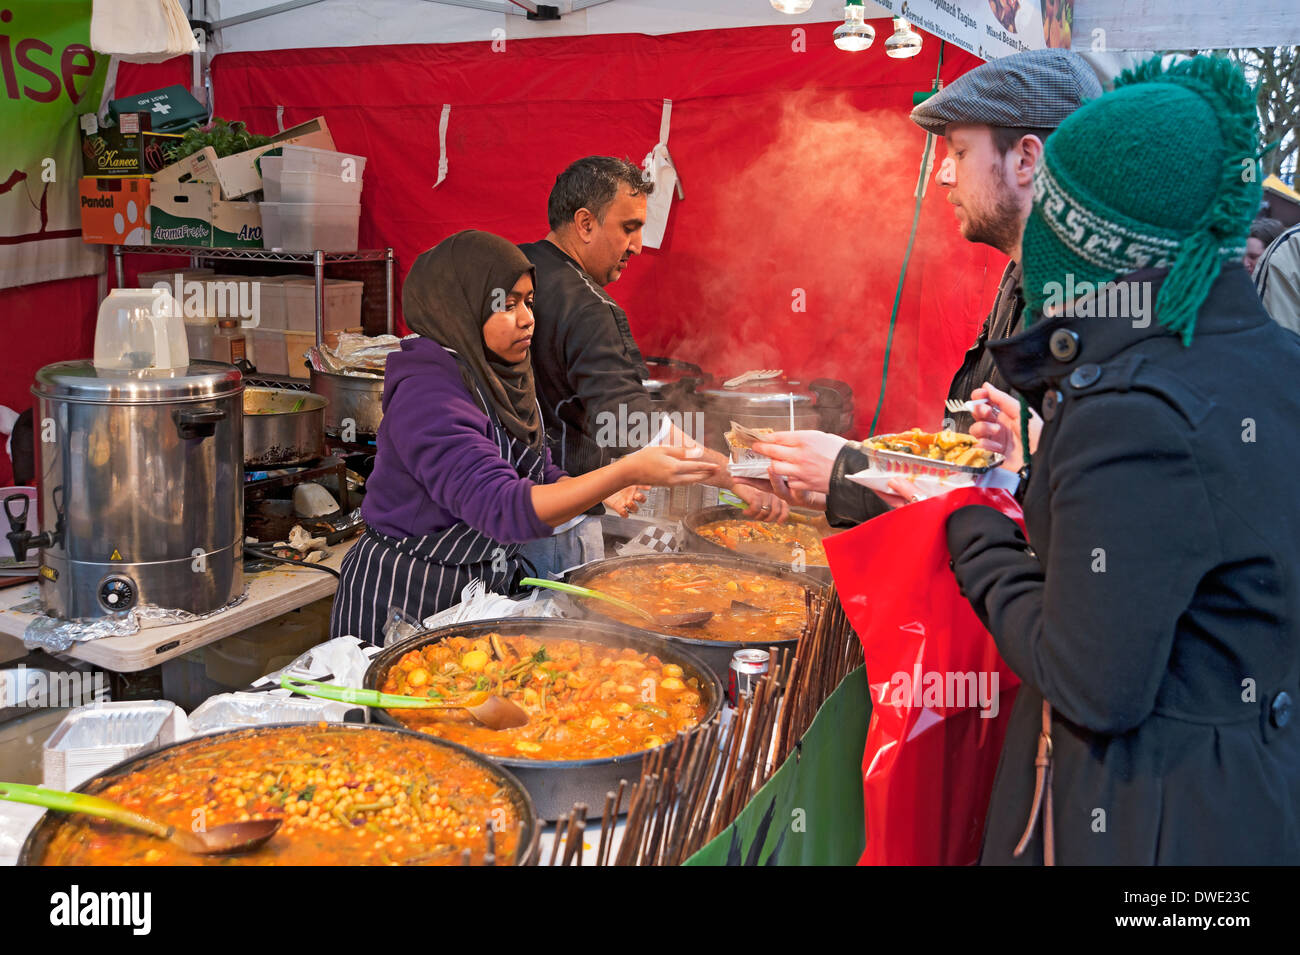 Junge Frau serviert marokkanisches Street Food auf dem Marktstand Stand York North Yorkshire England Vereinigtes Königreich GB Großbritannien Stockfoto